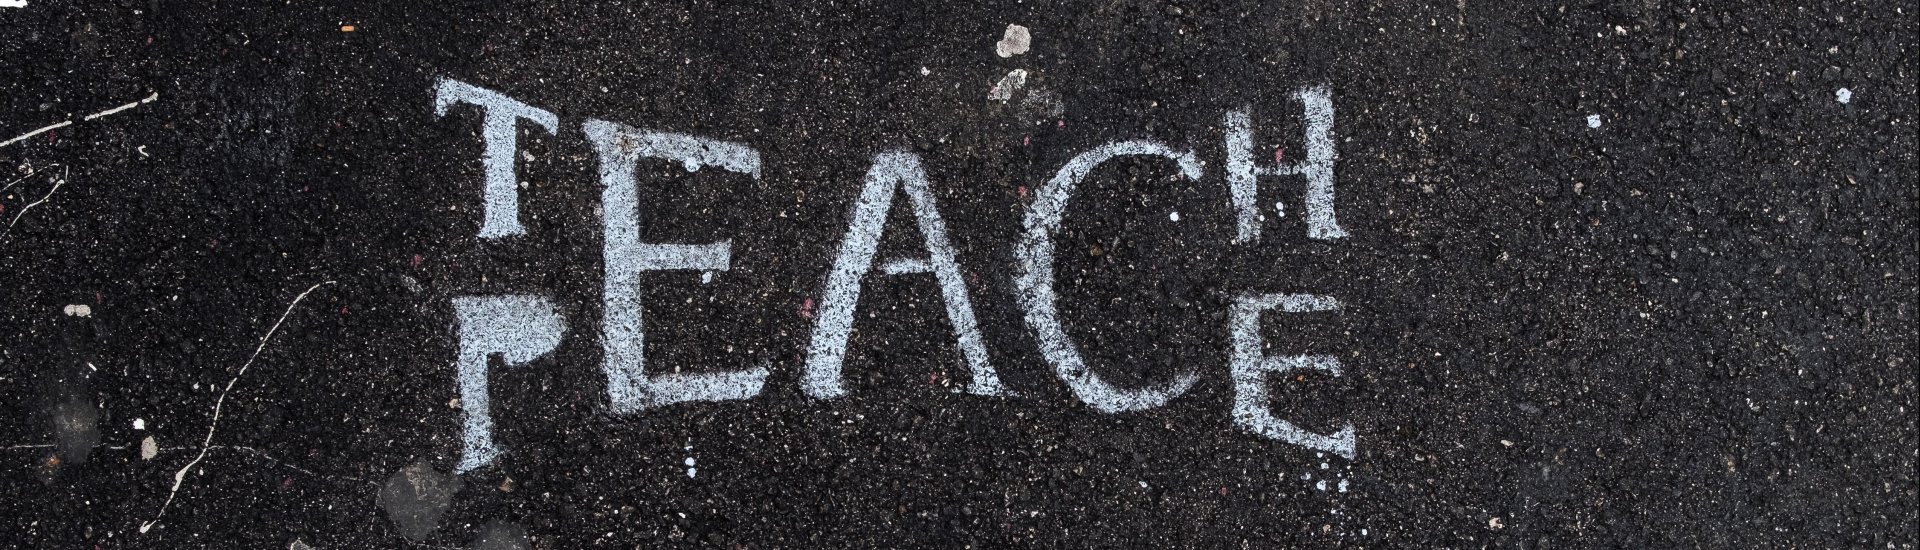 Teach peace